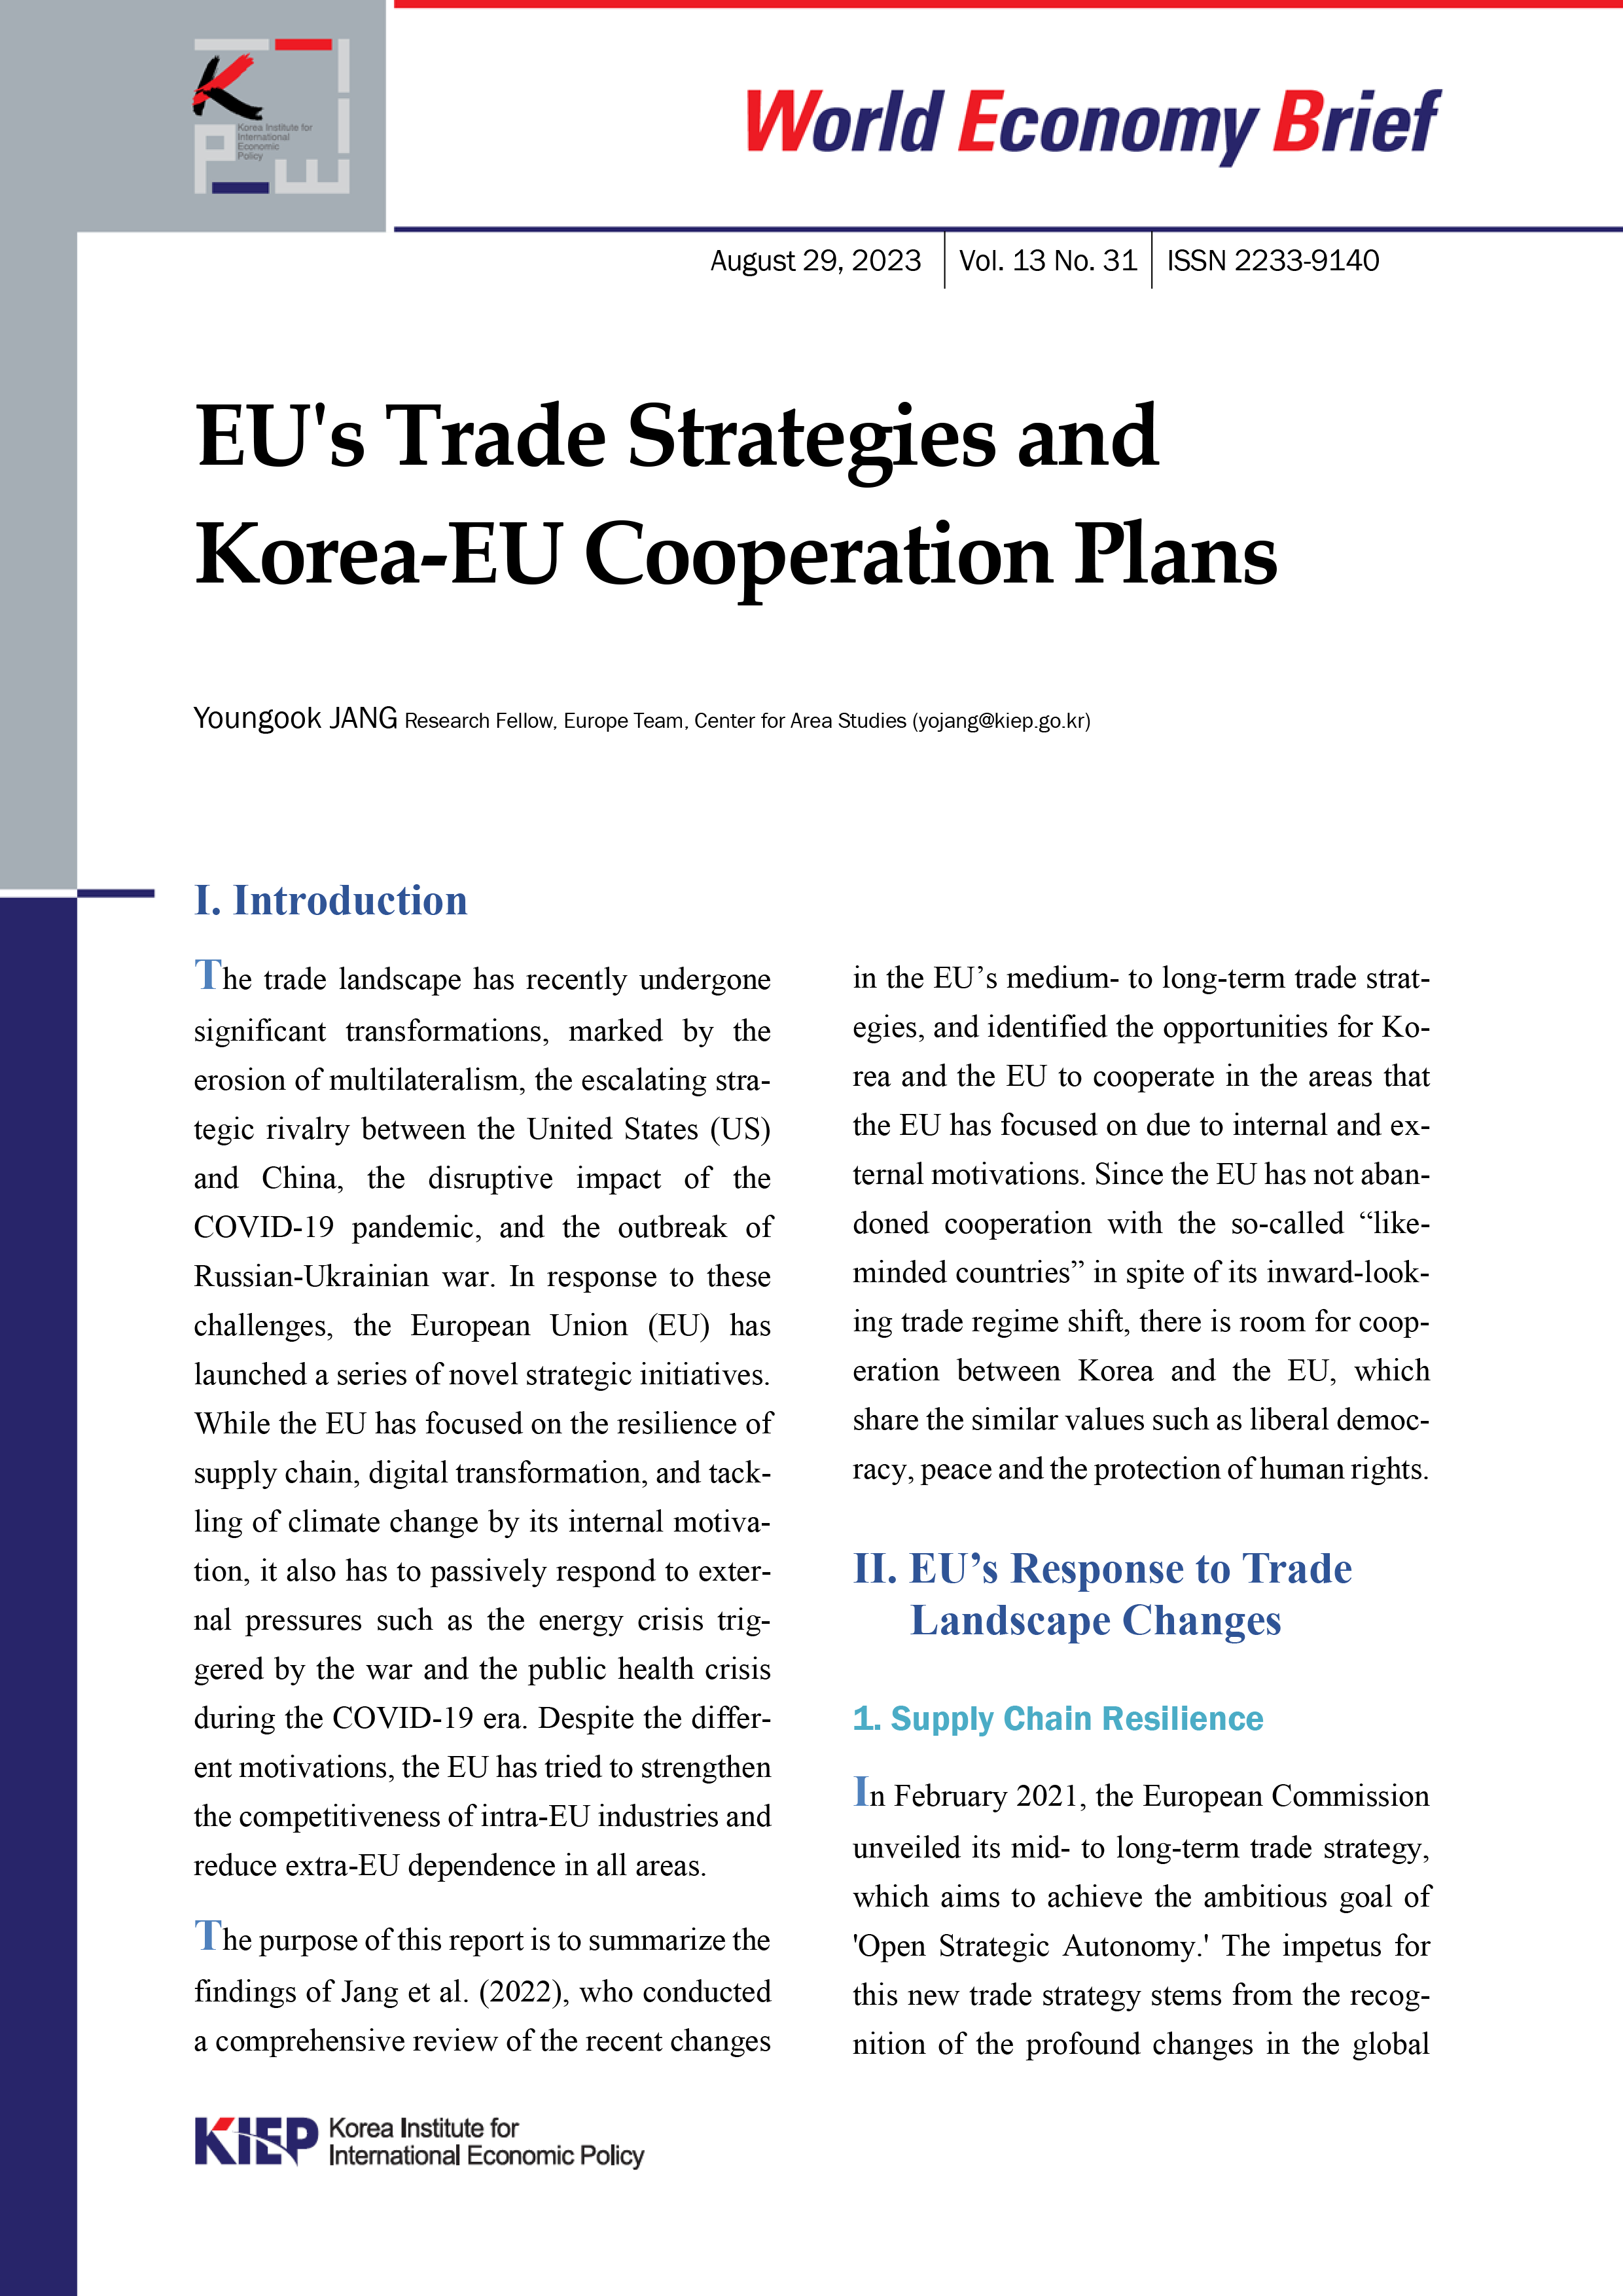 EU's Trade Strategies and Korea-EU Cooperation Plans